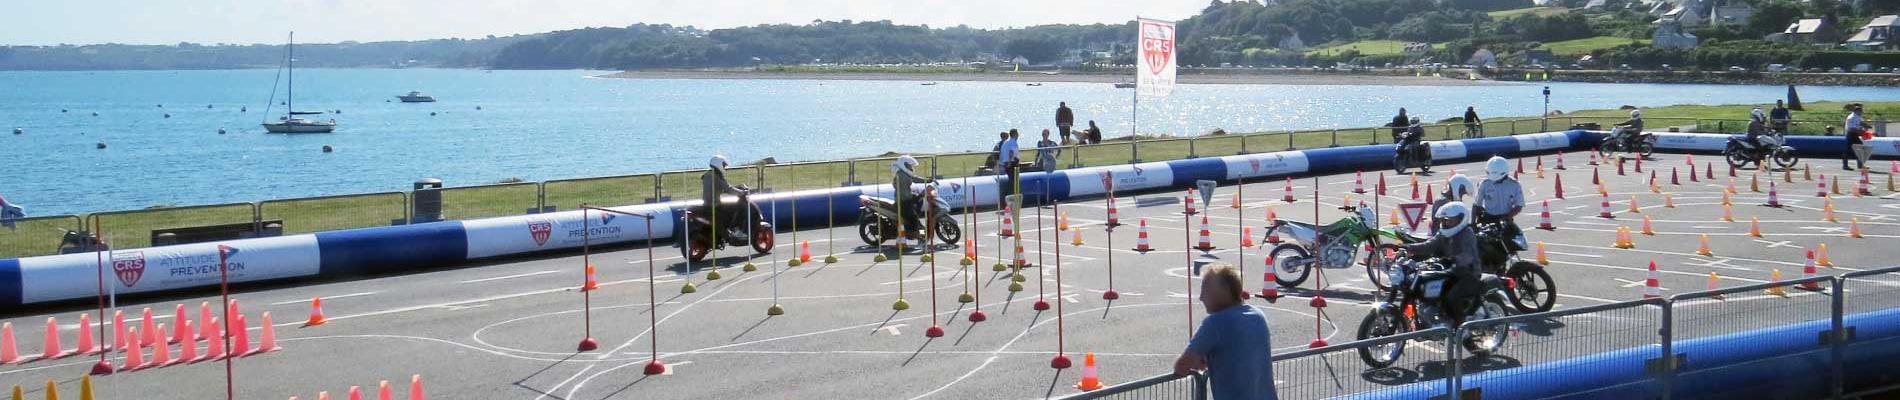 Initiation au deux-roues : les jeunes en piste pour la sécurité à Perros-Guirec (22), du 6 au 10 août